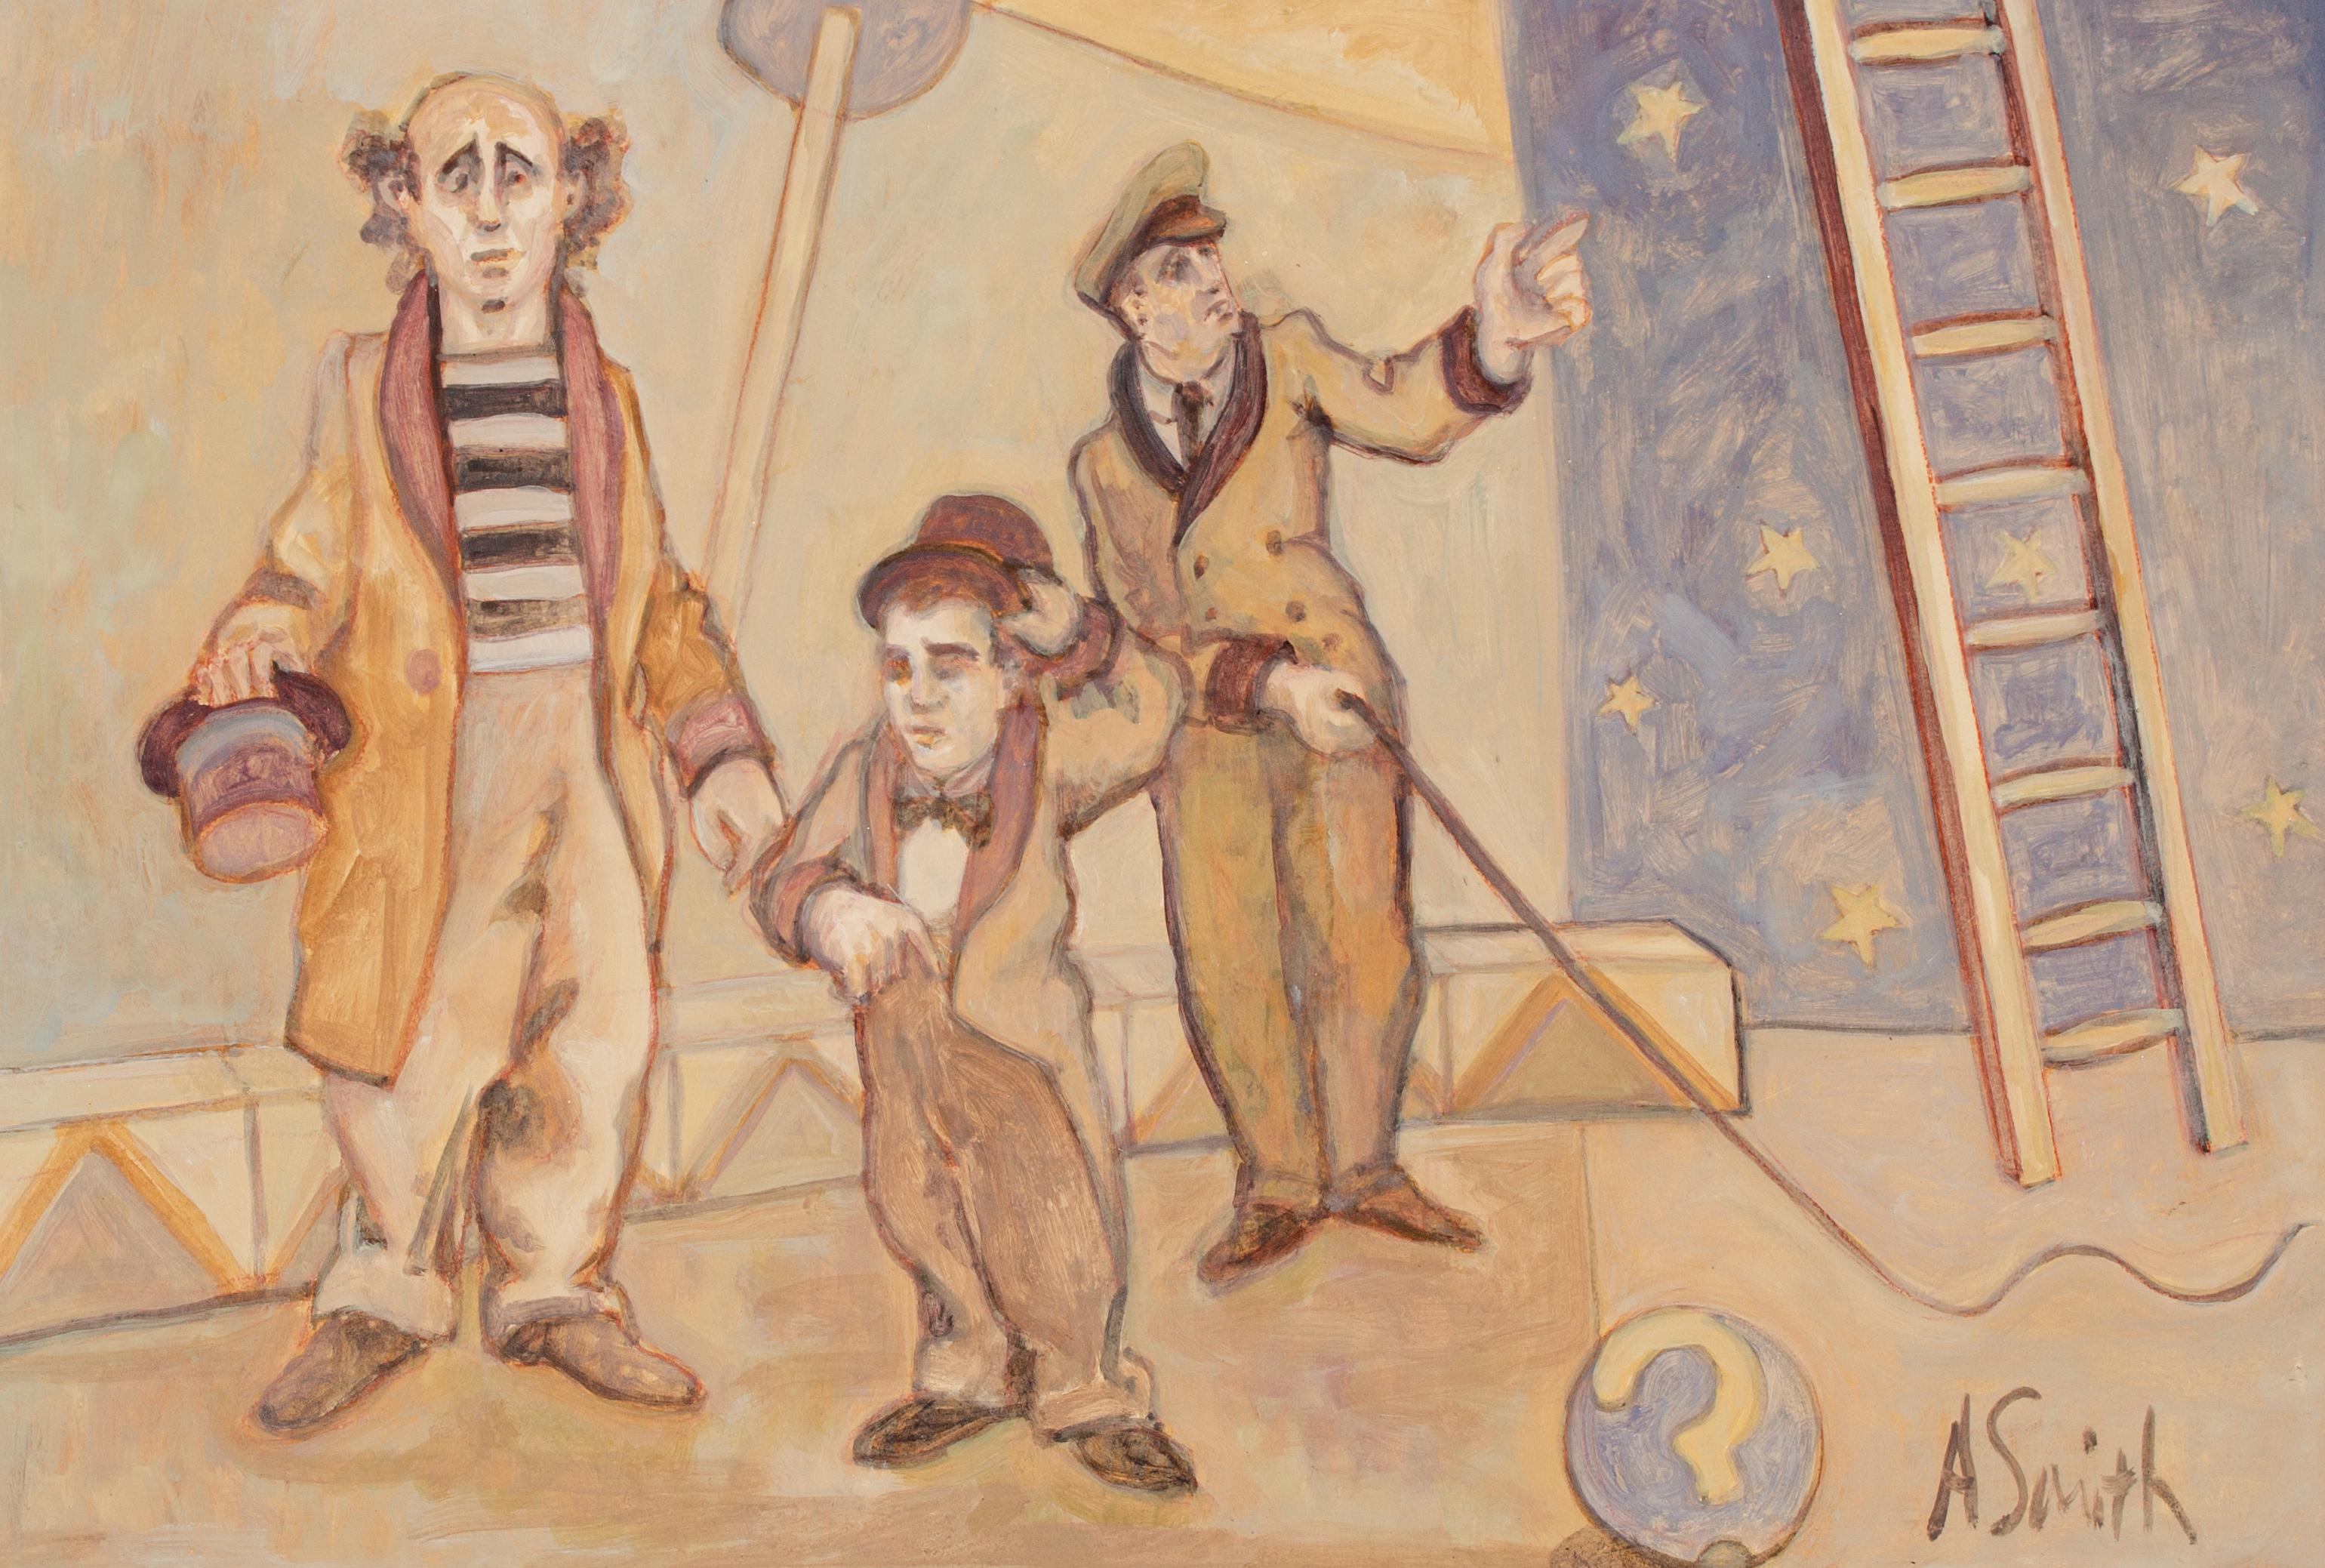 Arthur Smith (américain, 1897-1972)
Sans titre (artistes de cirque), 20e siècle
Huile sur carton
21 x 18 7/8 in.
Encadré : 26 3/4 x  35 3/4 in.
Signé en bas à droite : A Smith

Arthur Smith est un peintre américain répertorié, surtout connu pour ses